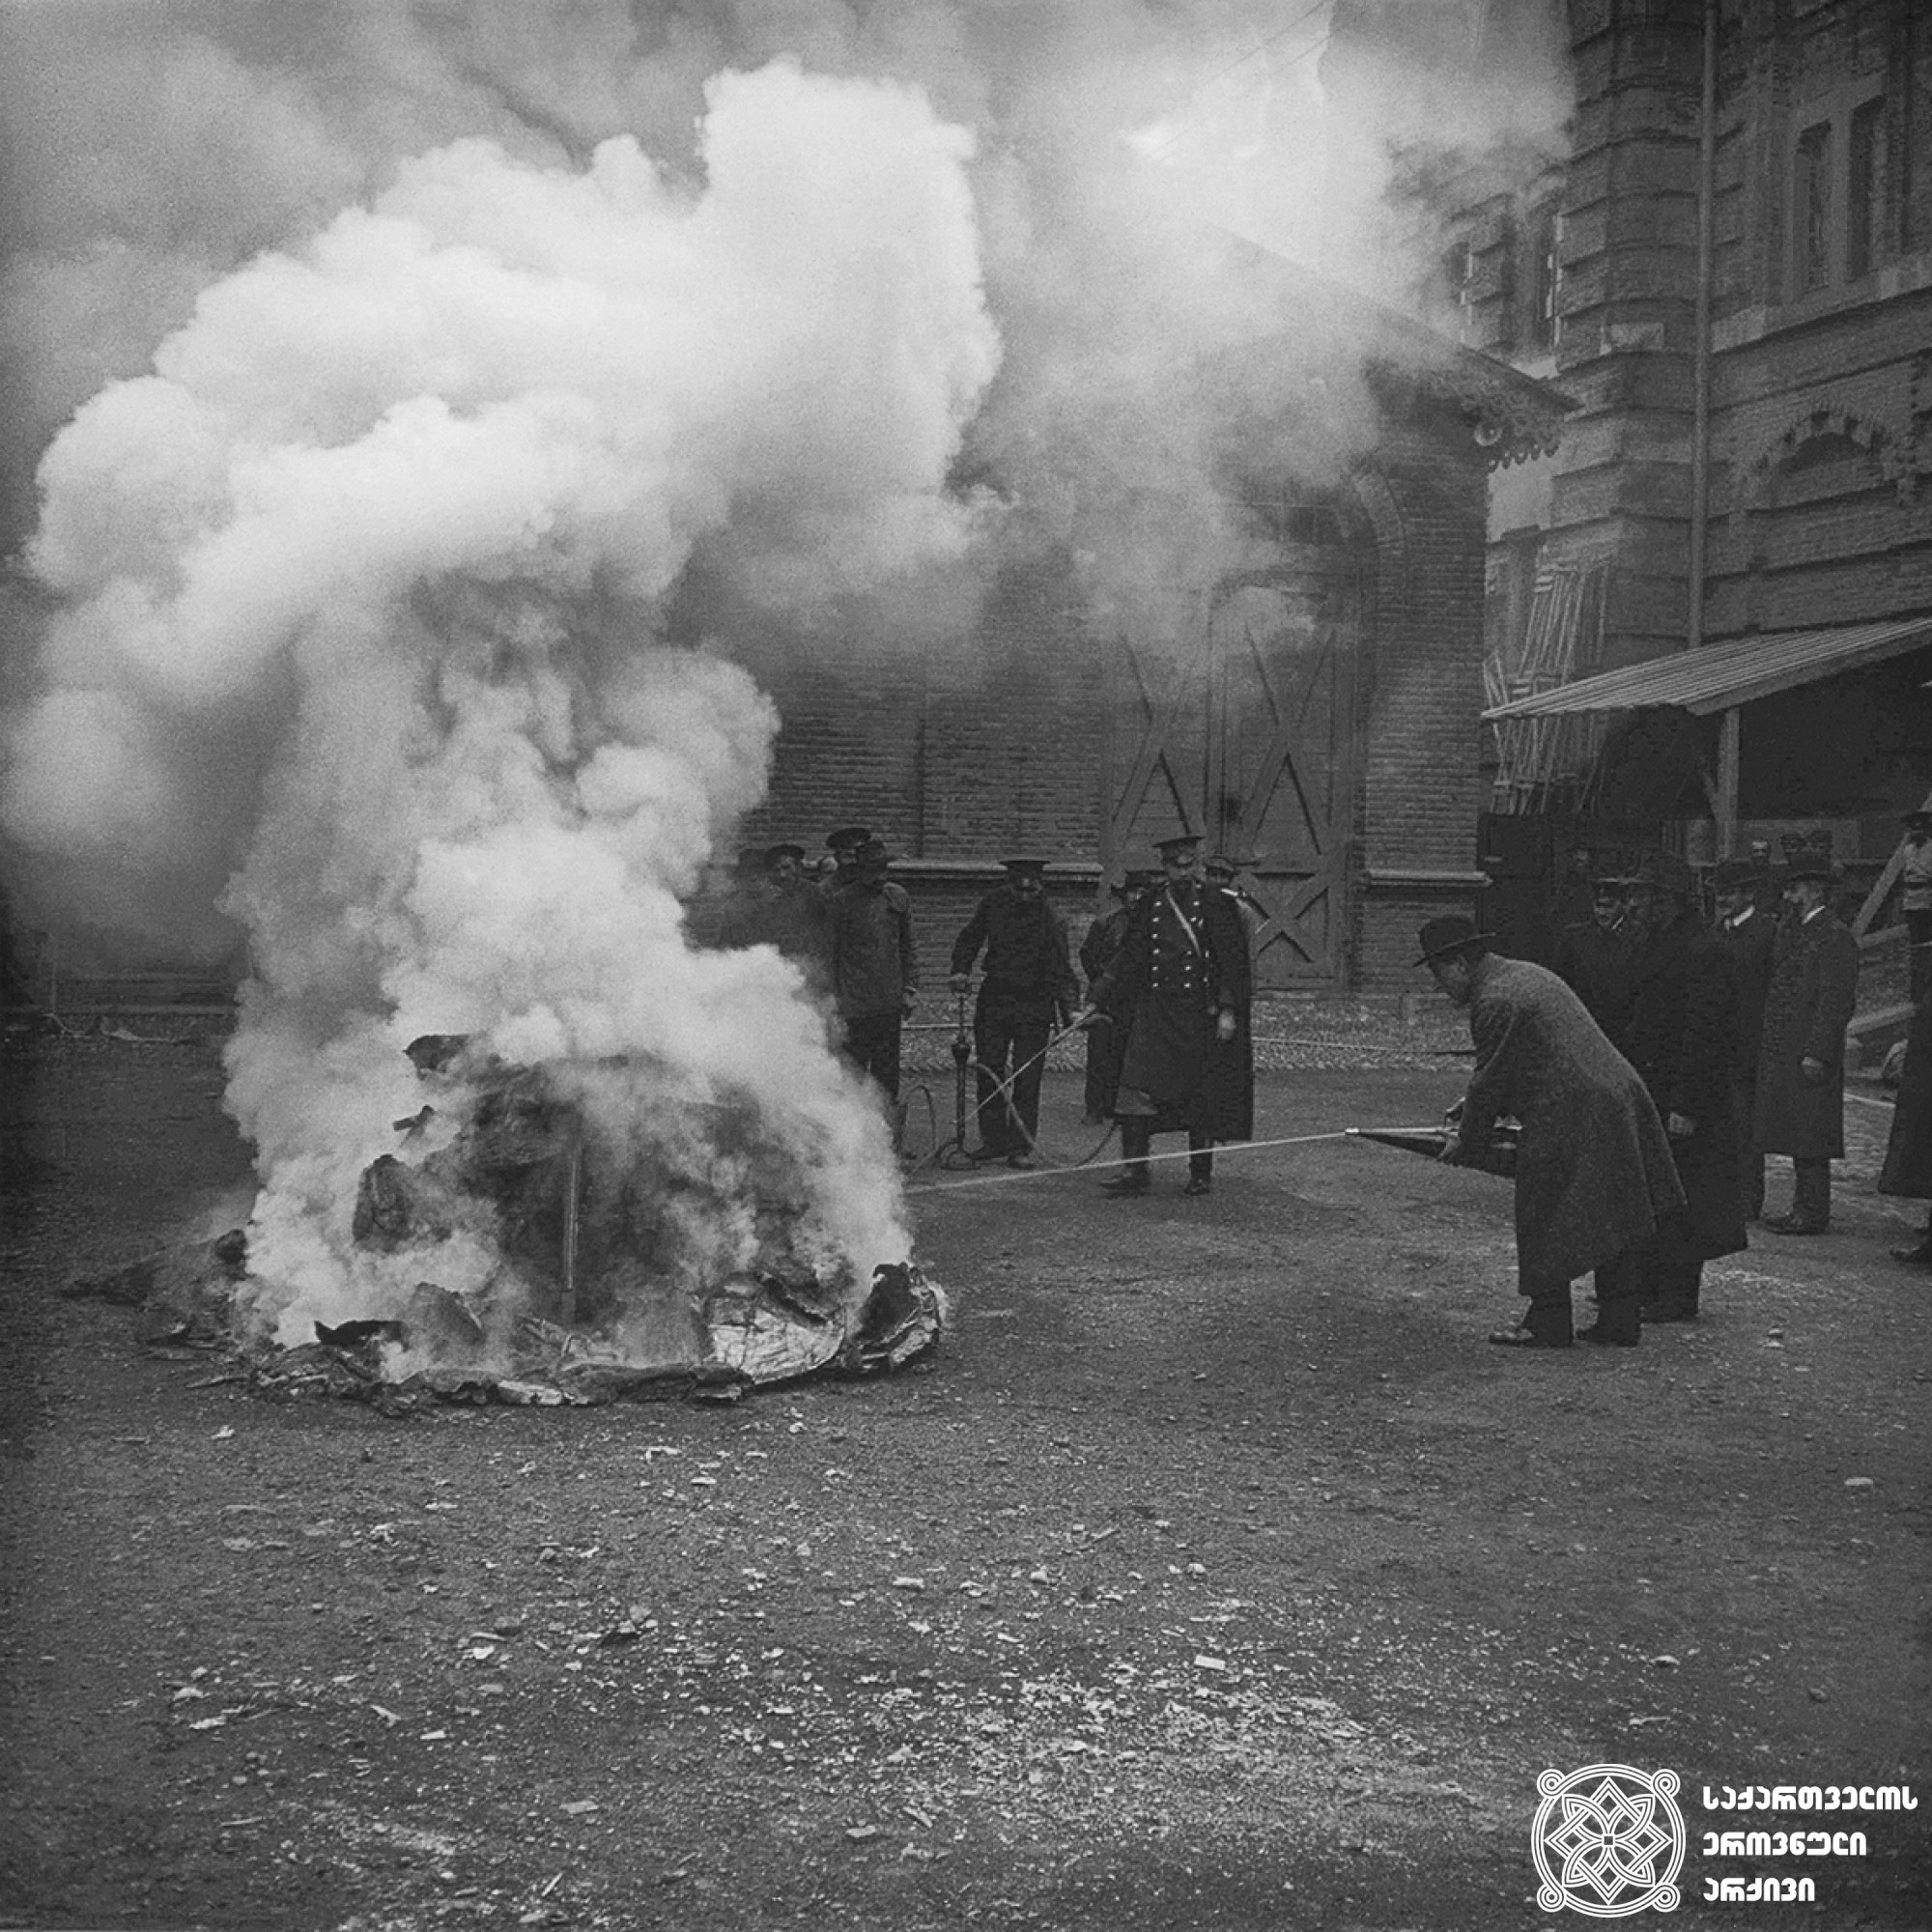 მეხანძრეების სწავლება, ხელოვნური ხანძრის ქრობა თბილისის სახაზინო თეატრის ეზოში <br>
1913 წელი <br>
გიგლო ყარალაშვილის კოლექცია <br>

Training of firefighters, extinguishing artificial fires in the yard of Tbilisi Treasury Theater <br>
1913 <br>
Giglo Karalashvili collection <br>